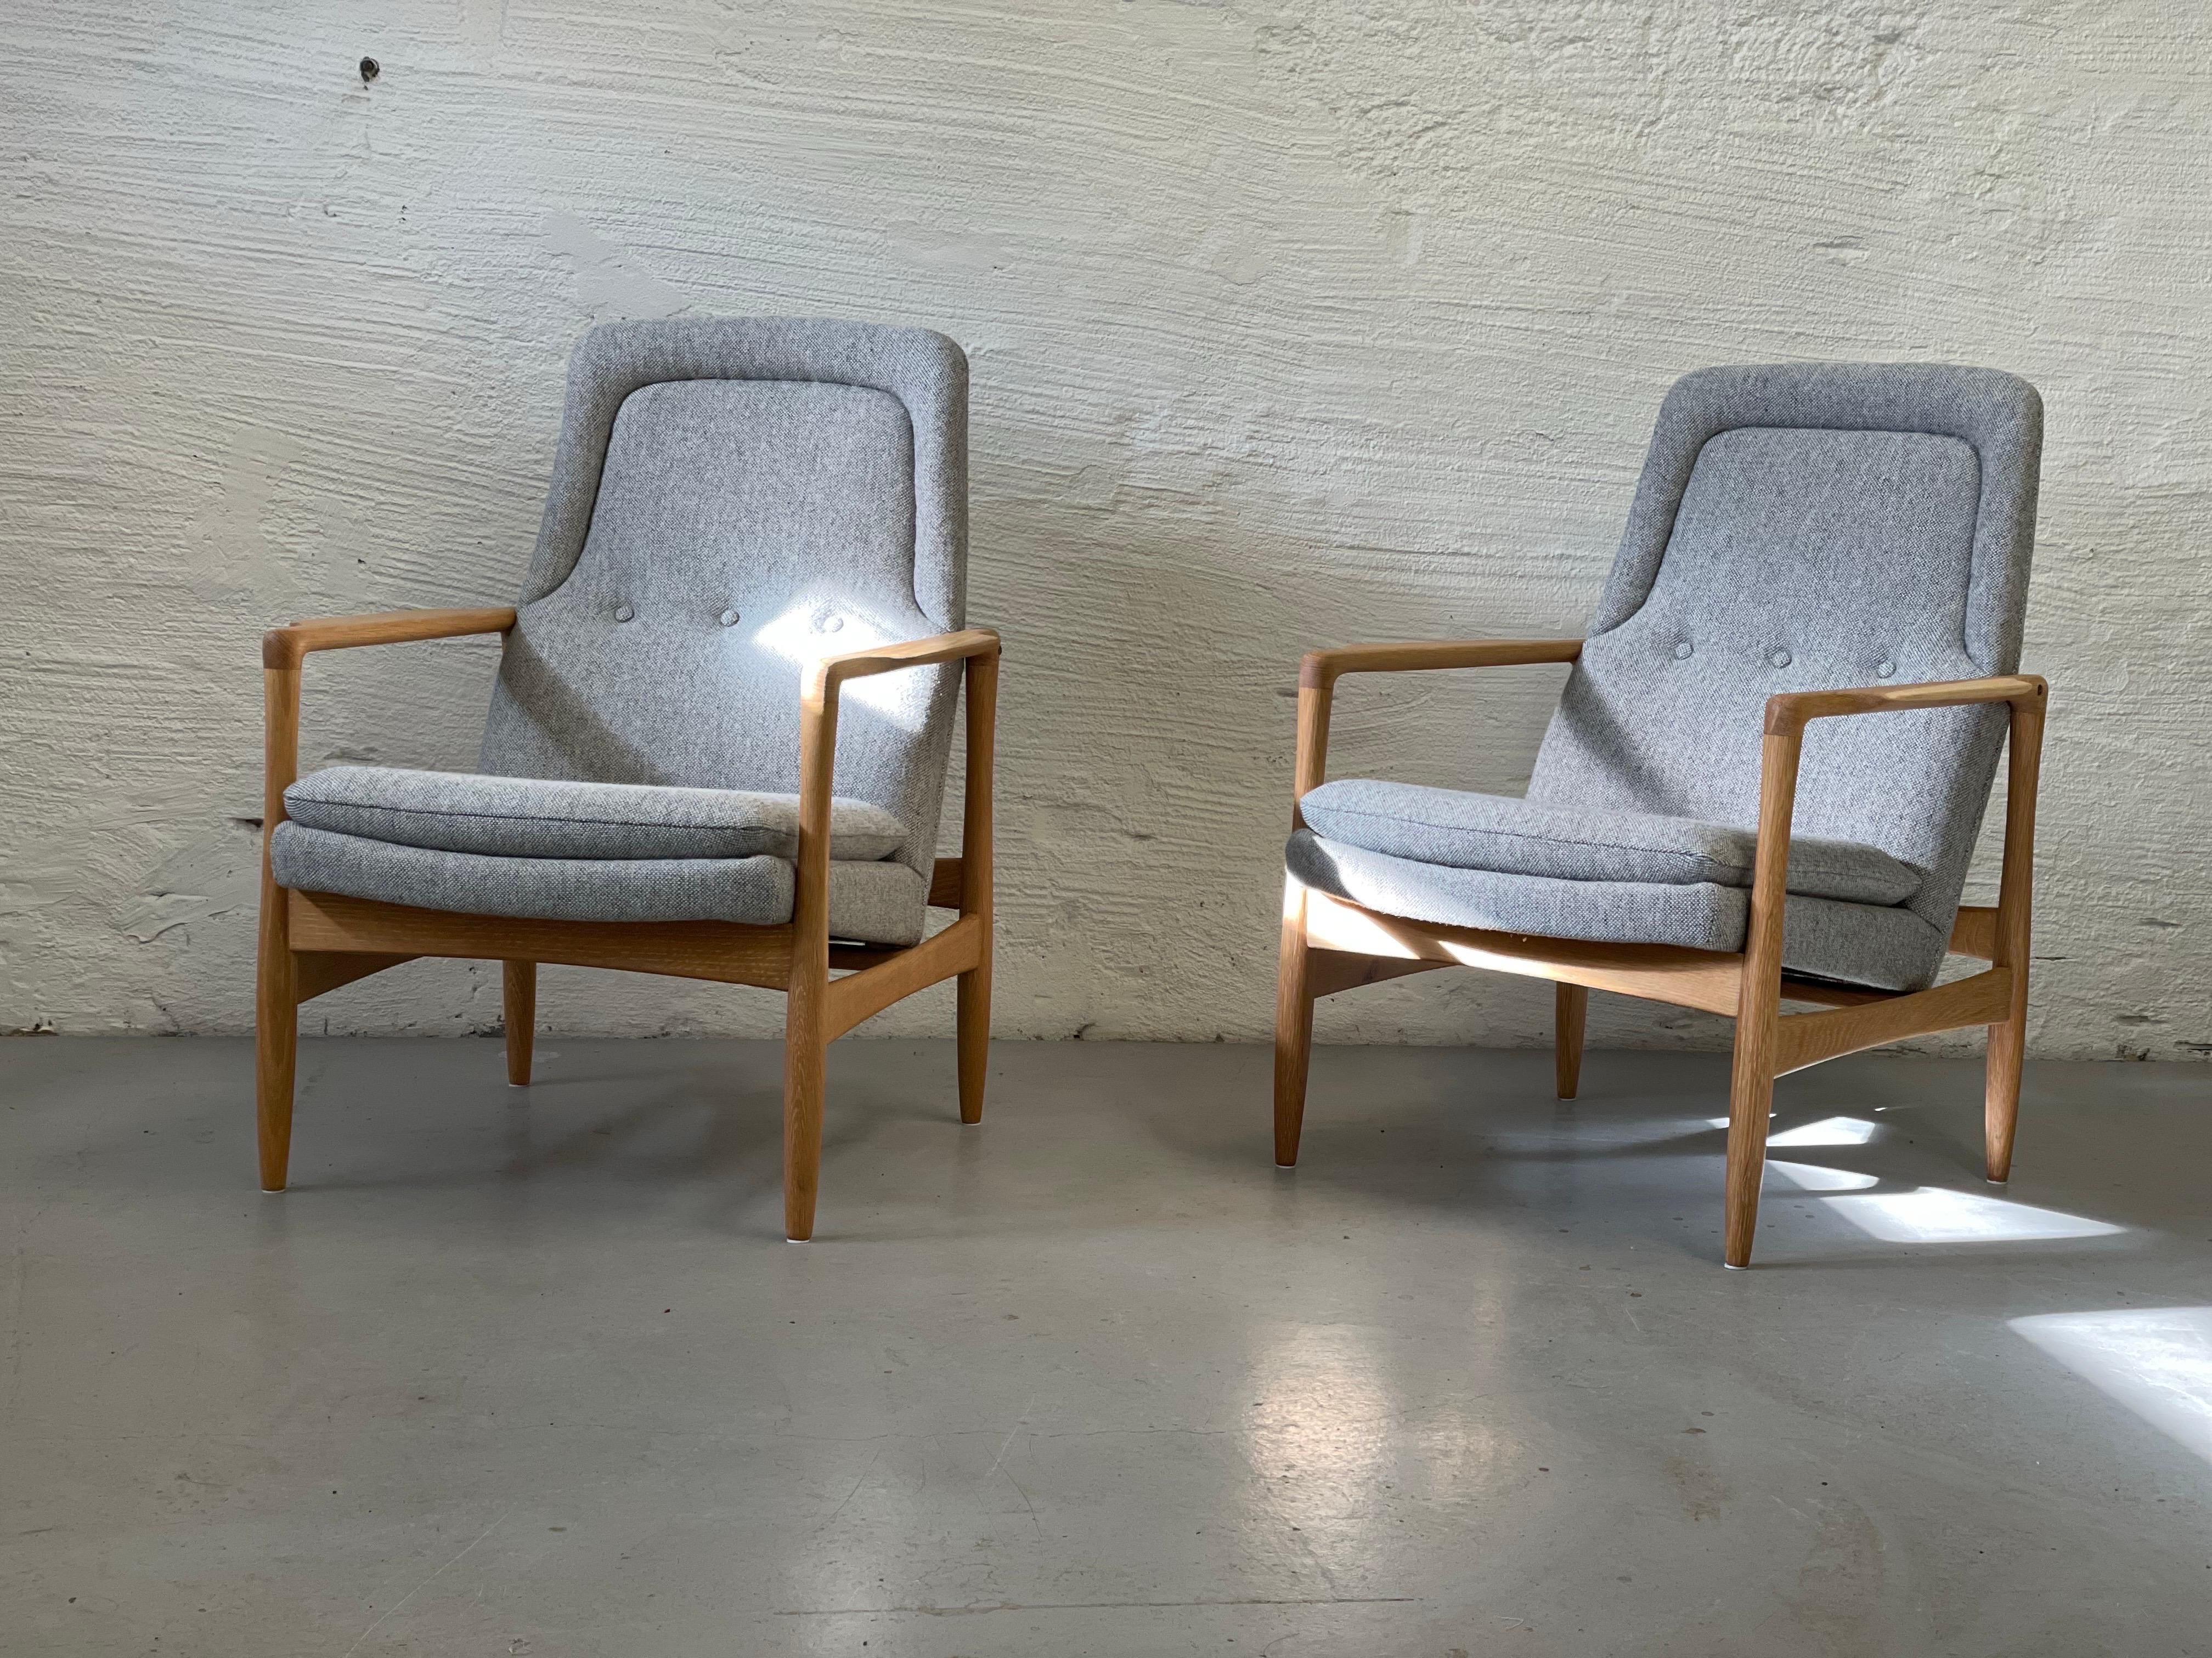 Norwegian Midcentury - Modern chairs, Torbjørn Afdal, 1957 3